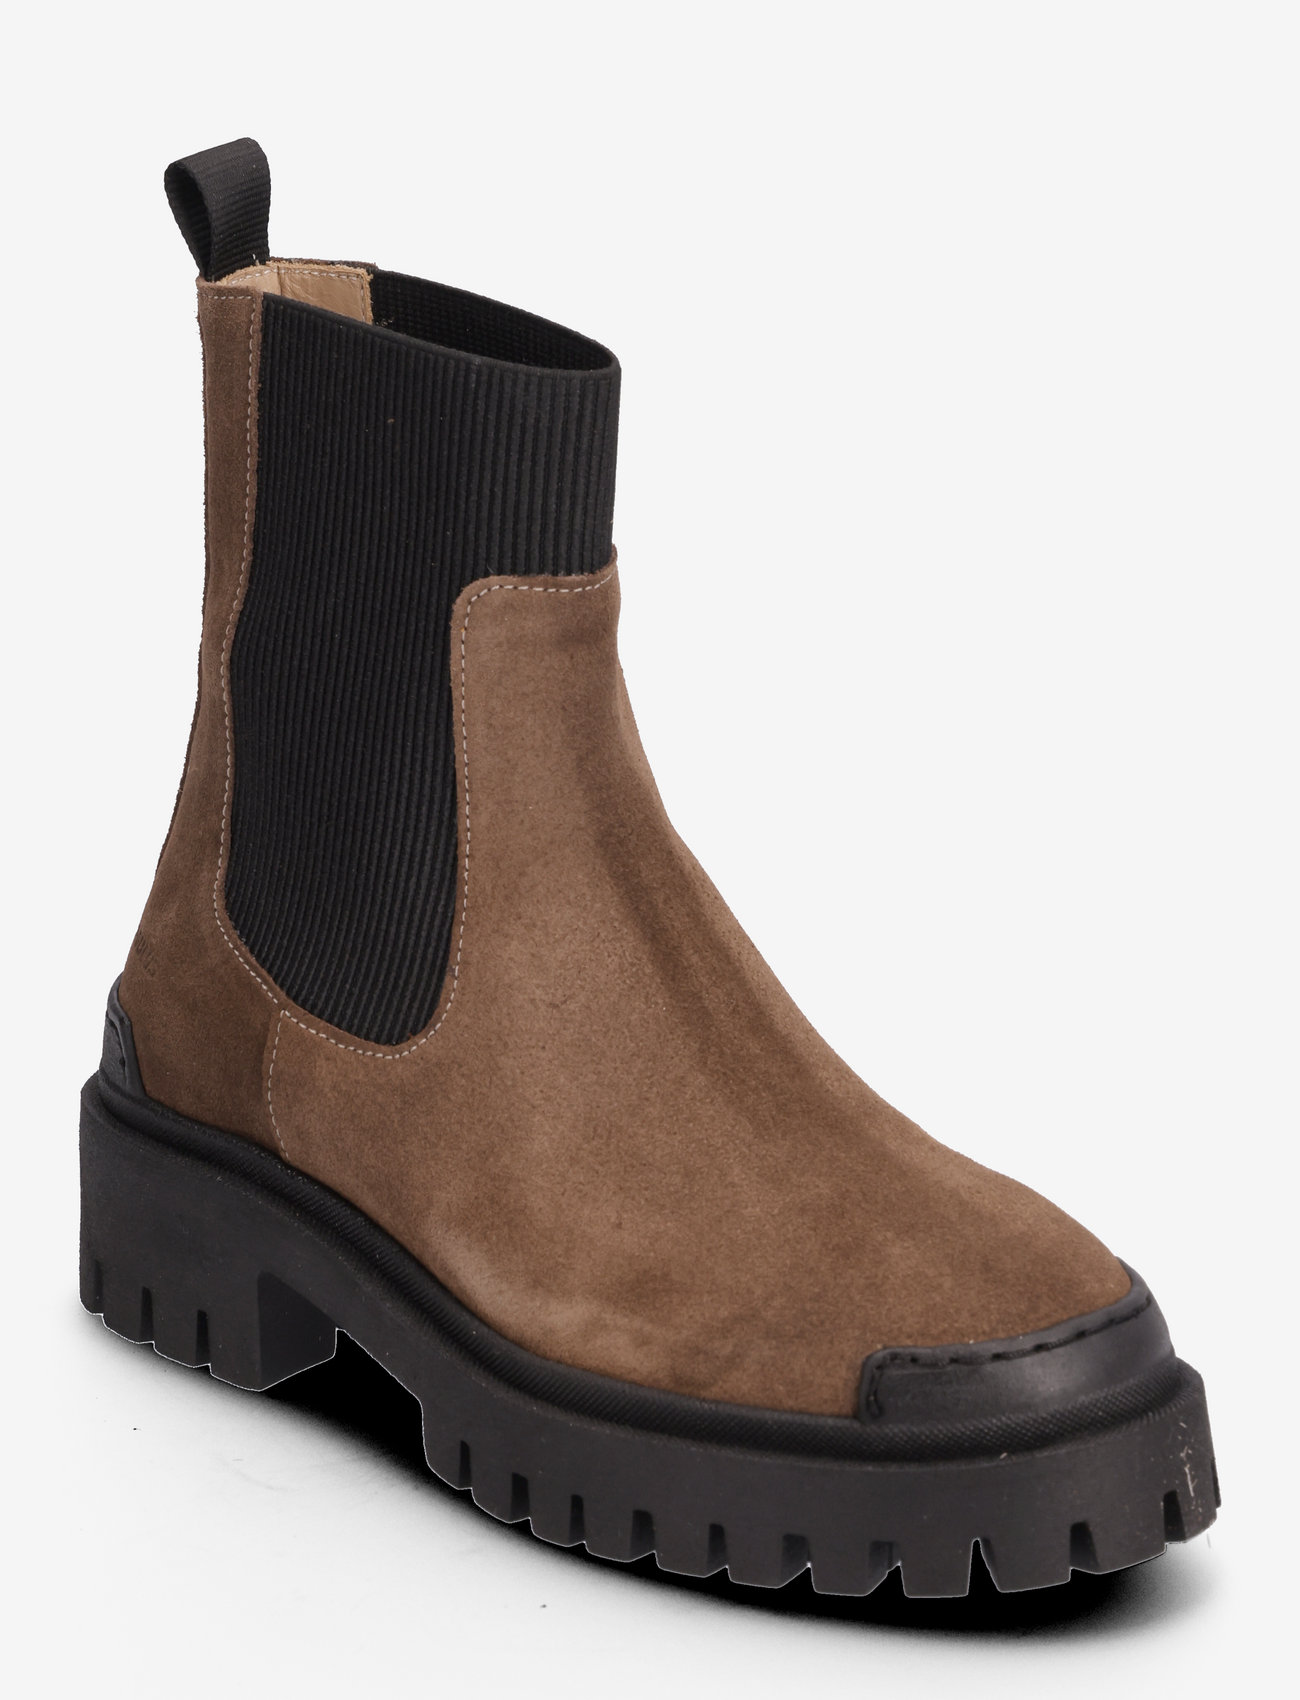 ANGULUS - Boots - flat - chelsea-saapad - 1753/019 taupe/black - 0